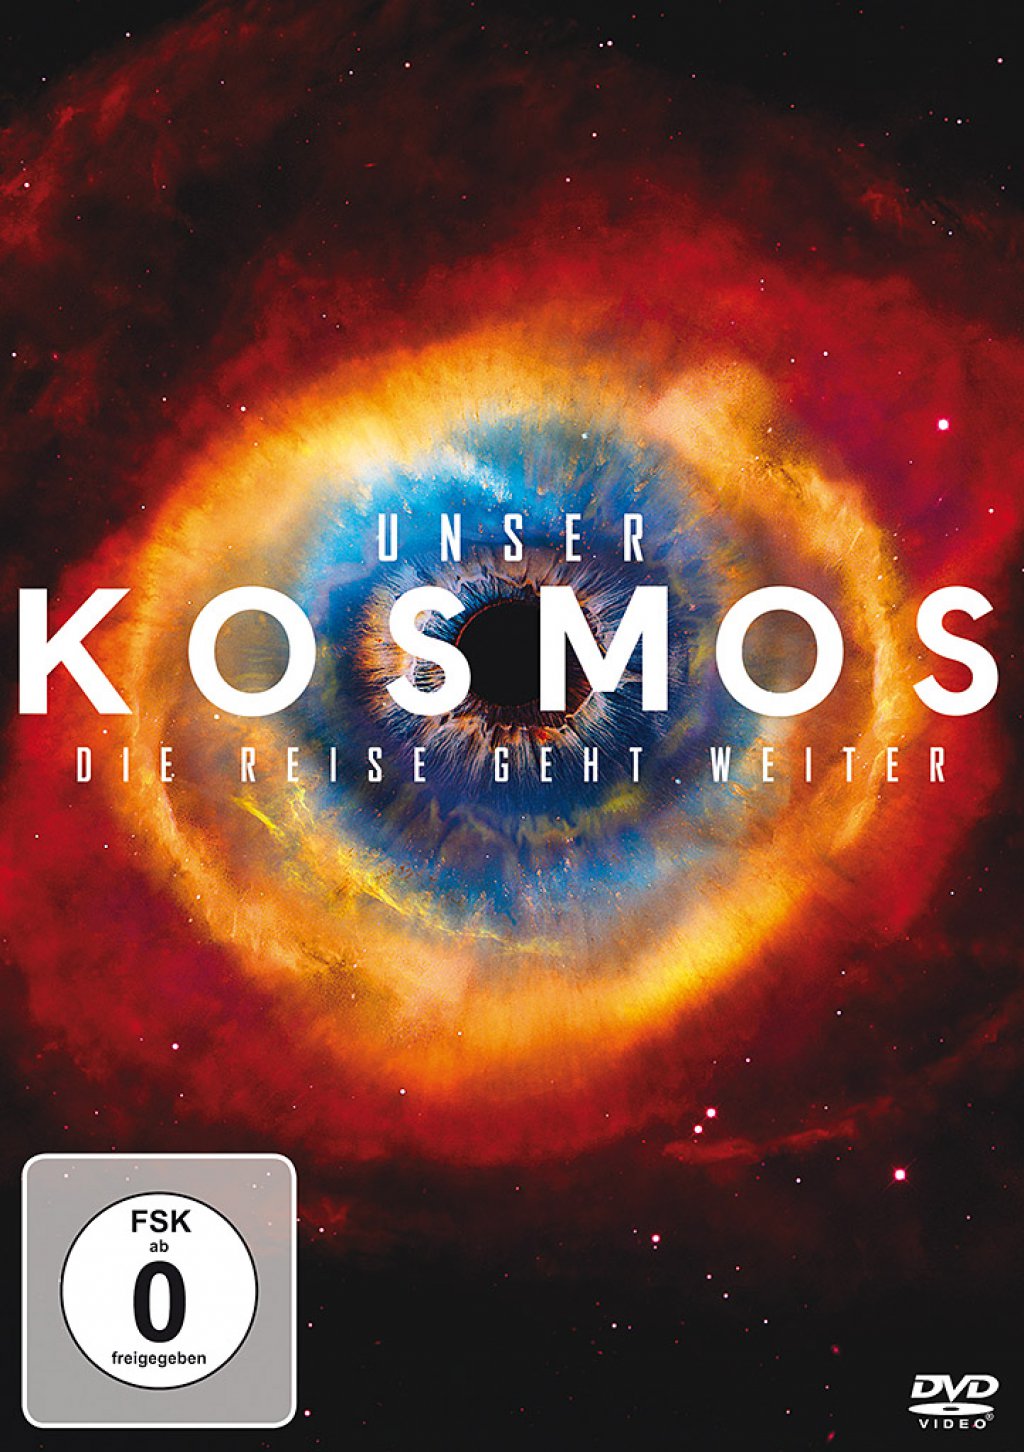 unser-kosmos-die-reise-geht-weiter-dvd